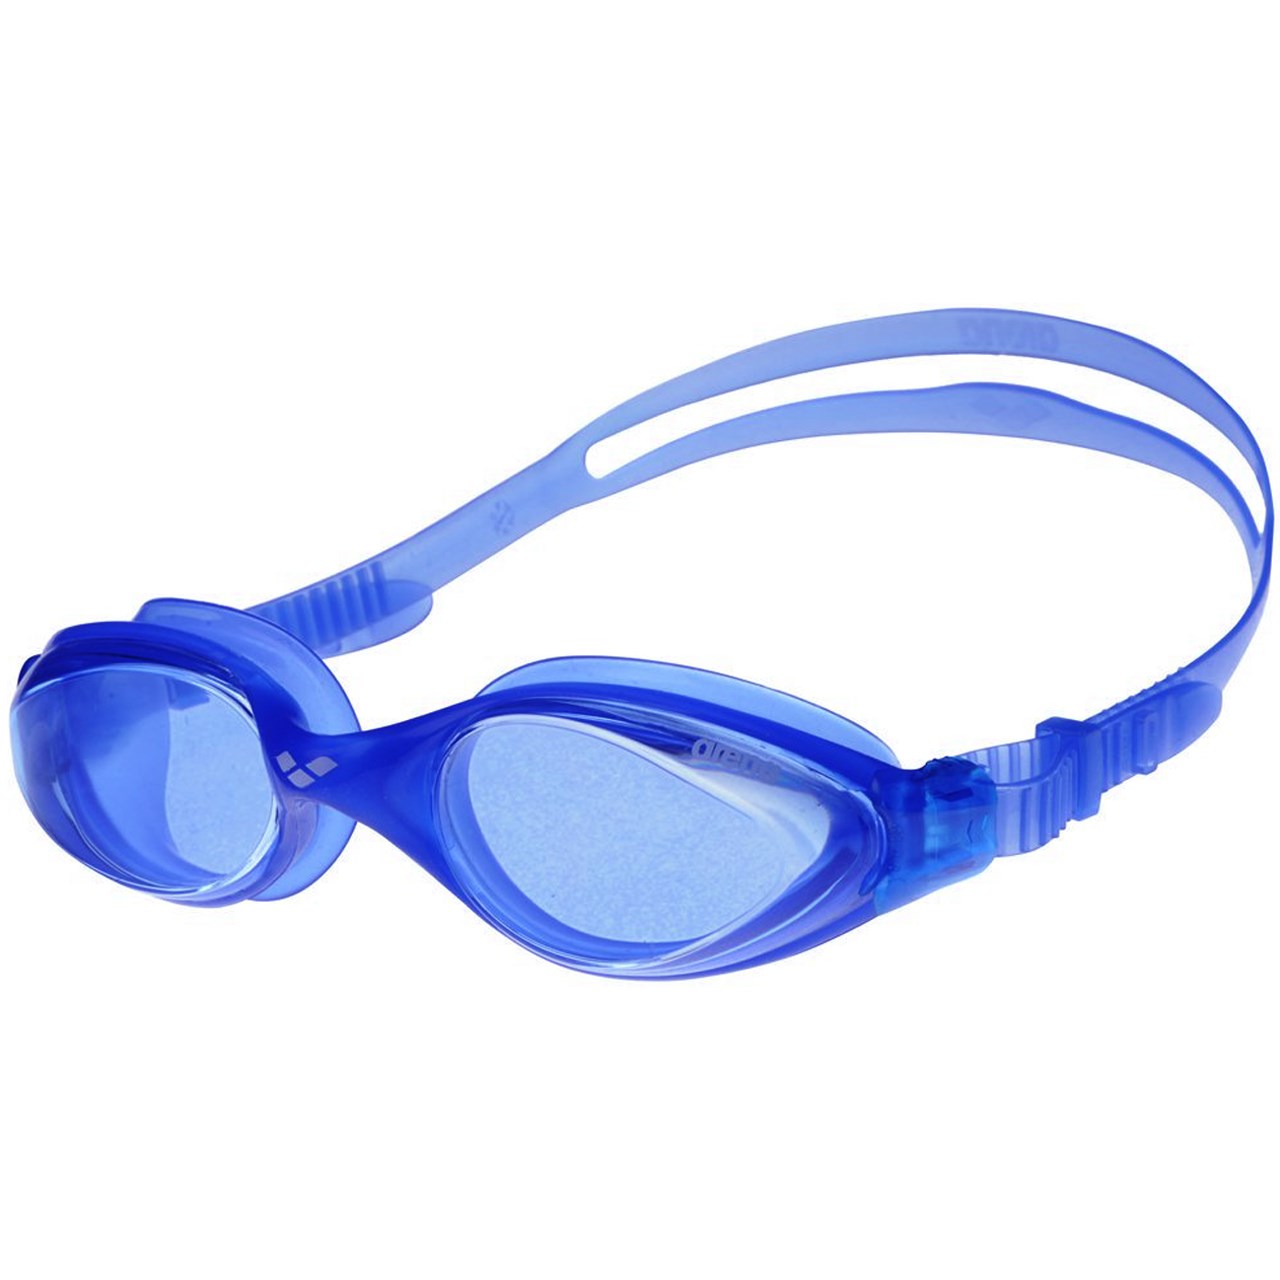 عینک شنای آرنا سری Training مدل Fluid